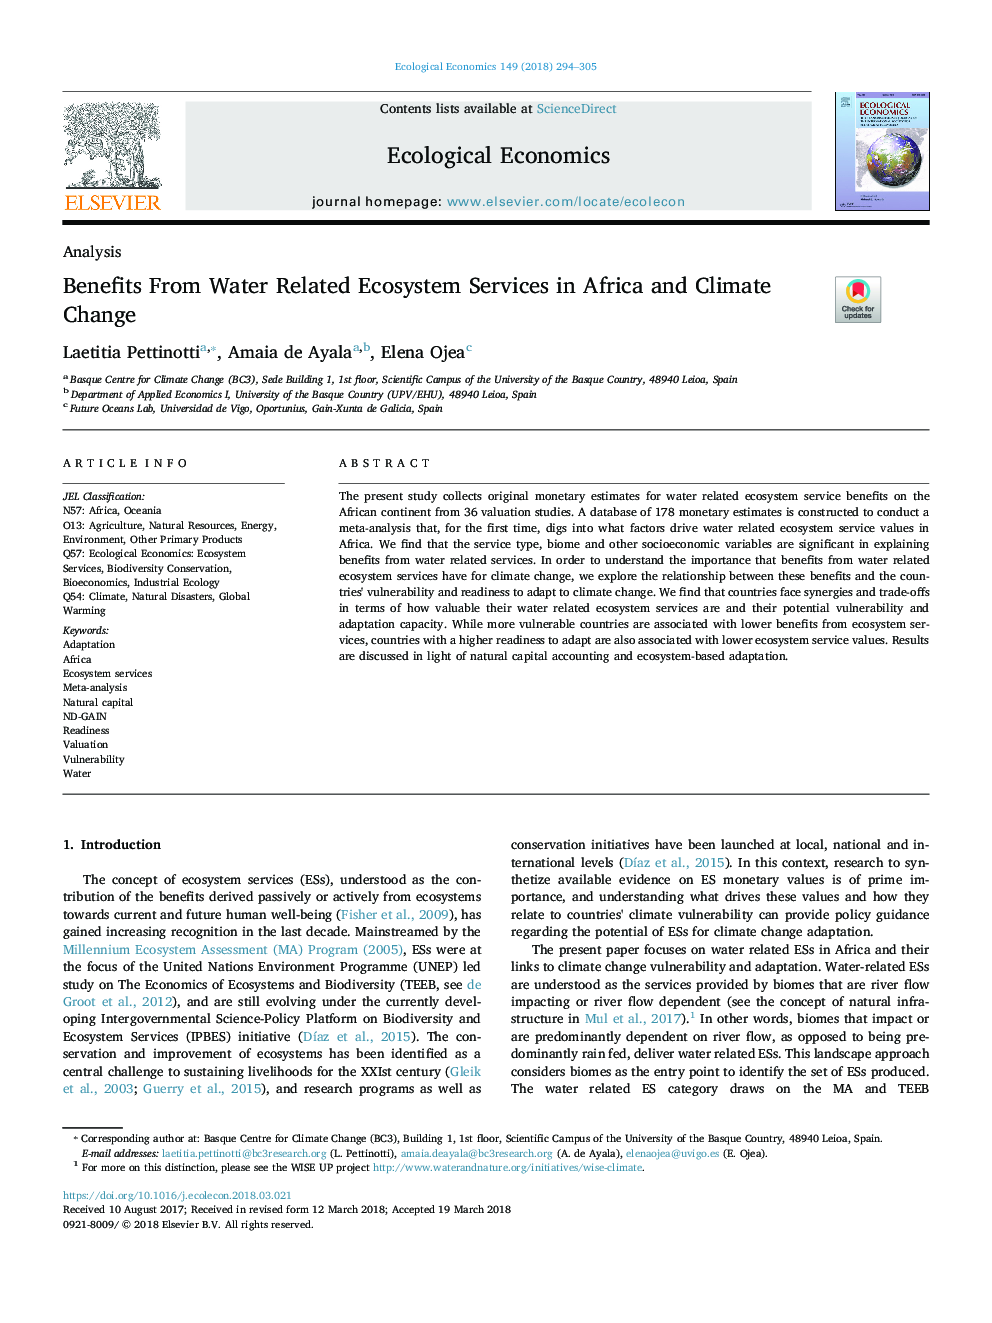 مزایای استفاده از خدمات اکوسیستم مربوط به آب در آفریقا و تغییرات آب و هوایی 